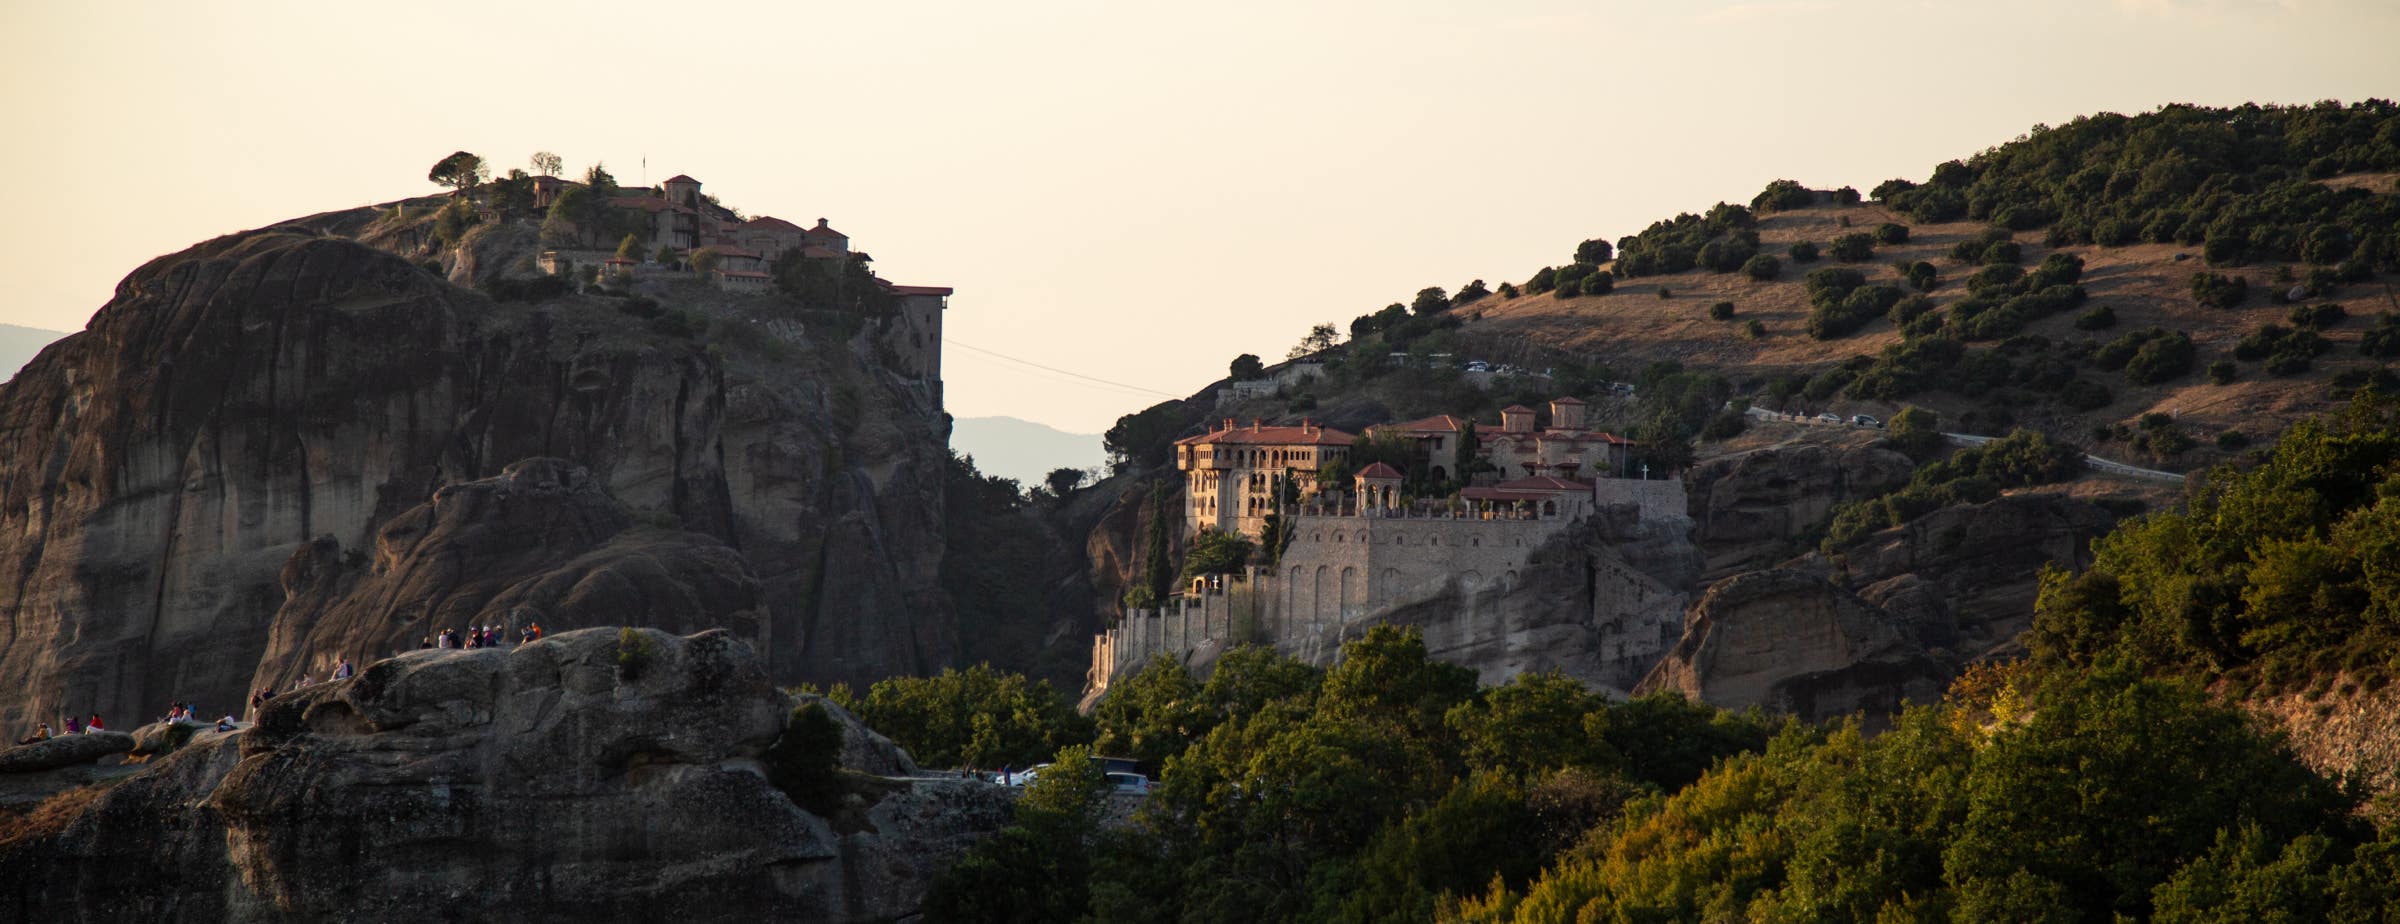 Slika prikazuje pogled na skale in dva samostana v Meteori. Levi samostan stoji na vrhu skale, desni samostan pa je zgrajen na skalah na pobočju večjega hriba.